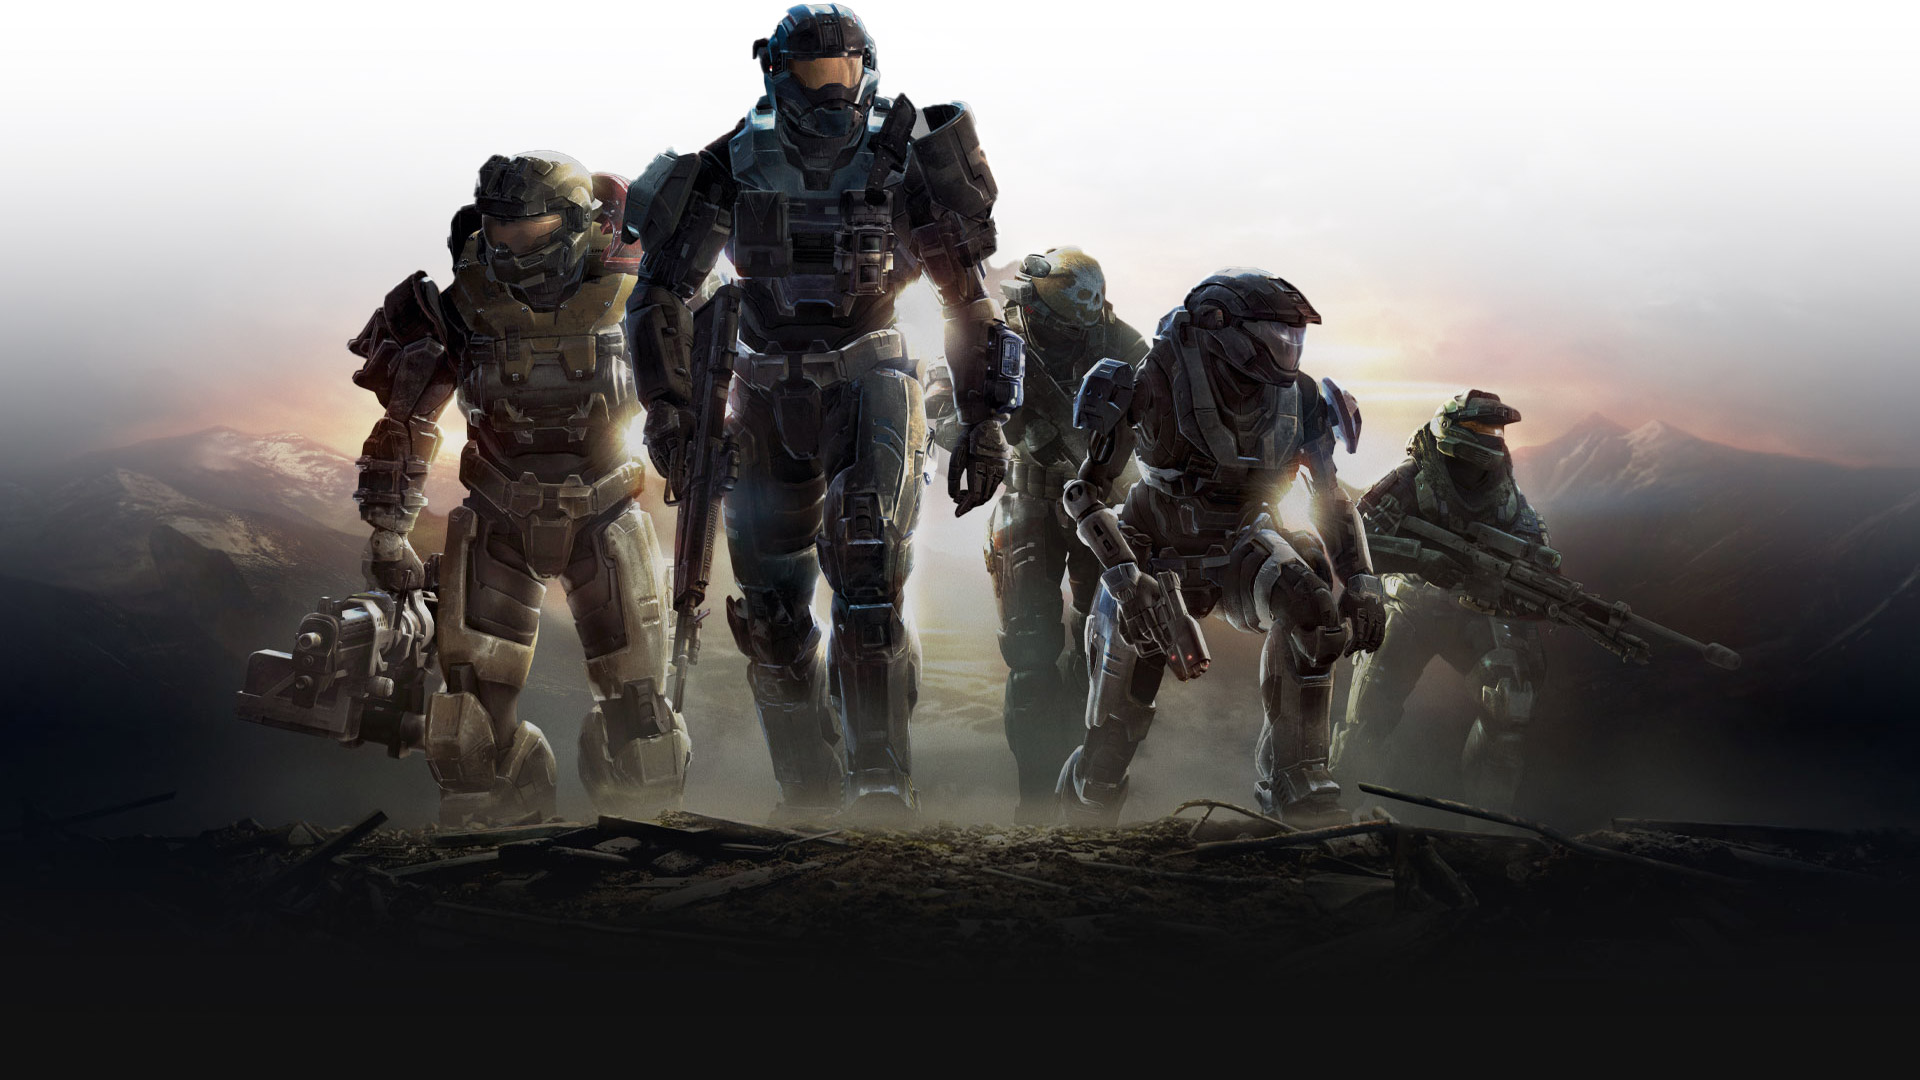 Varios Spartans de Halo Reach suben una colina con las armas listas